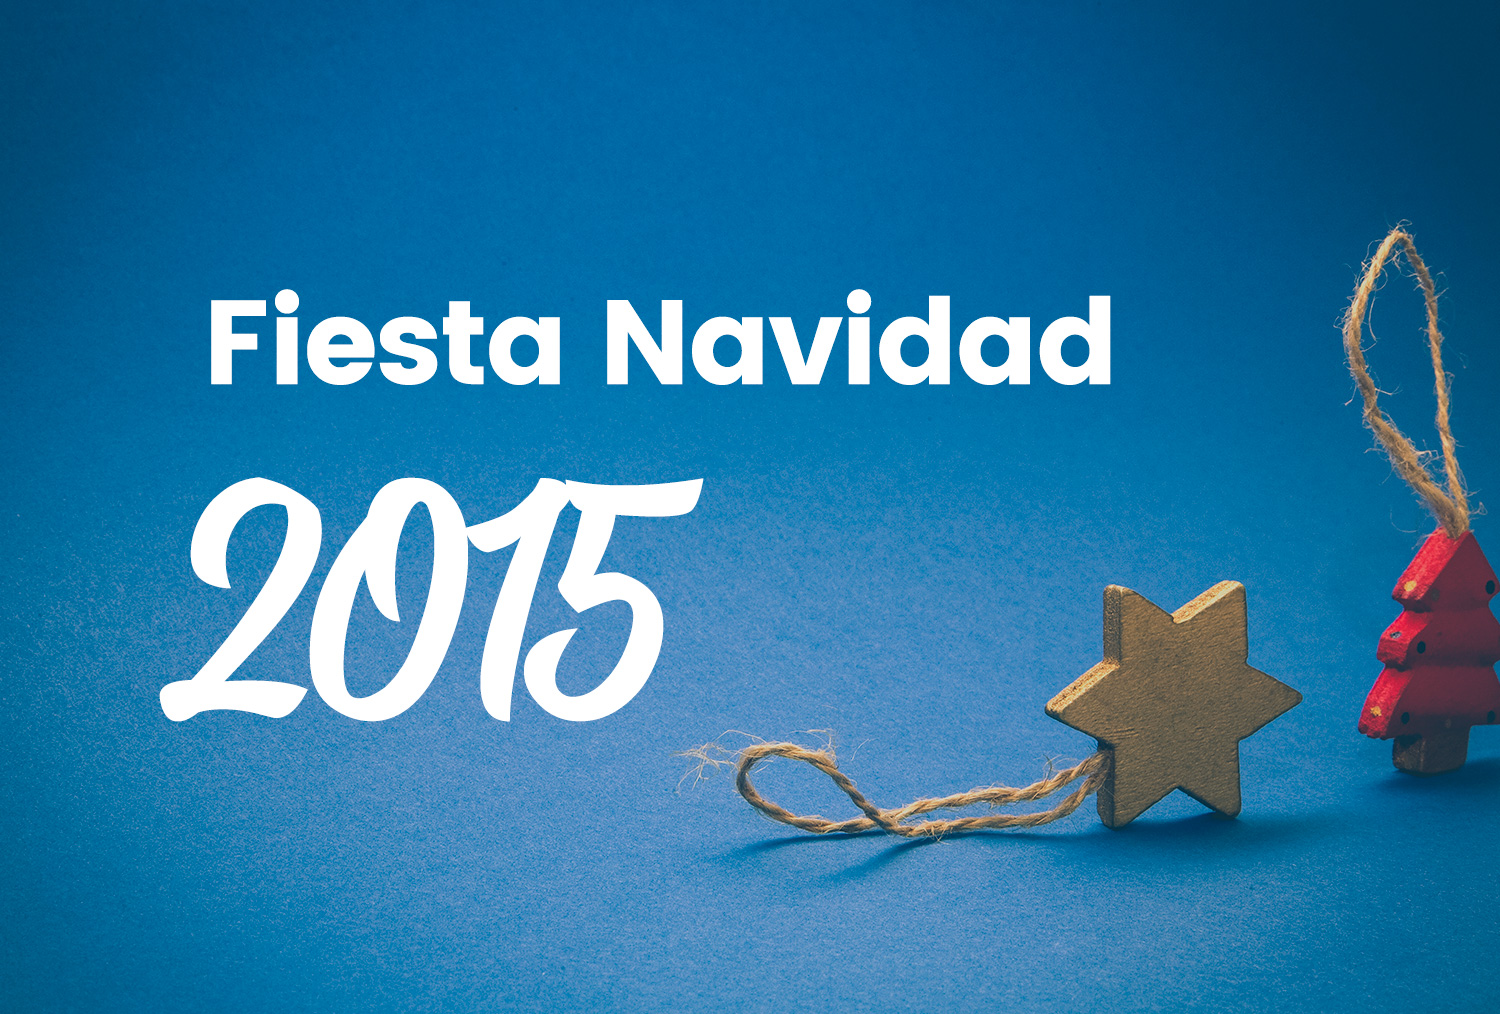 Fiesta Navidad 2015